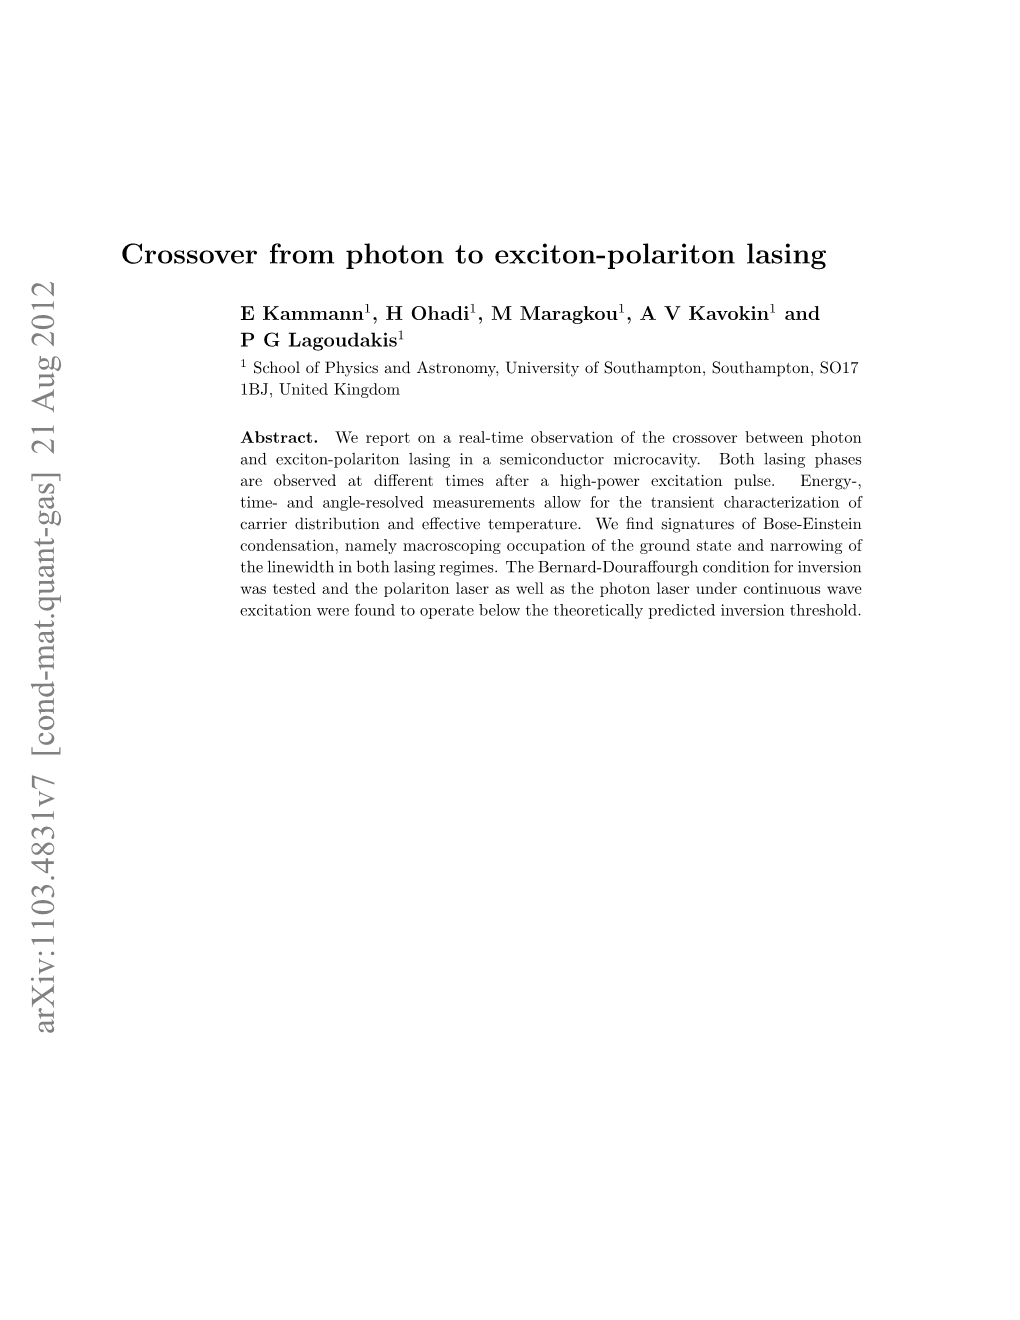 Crossover from Exciton-Polariton to Photon Bose-Einstein Condensation